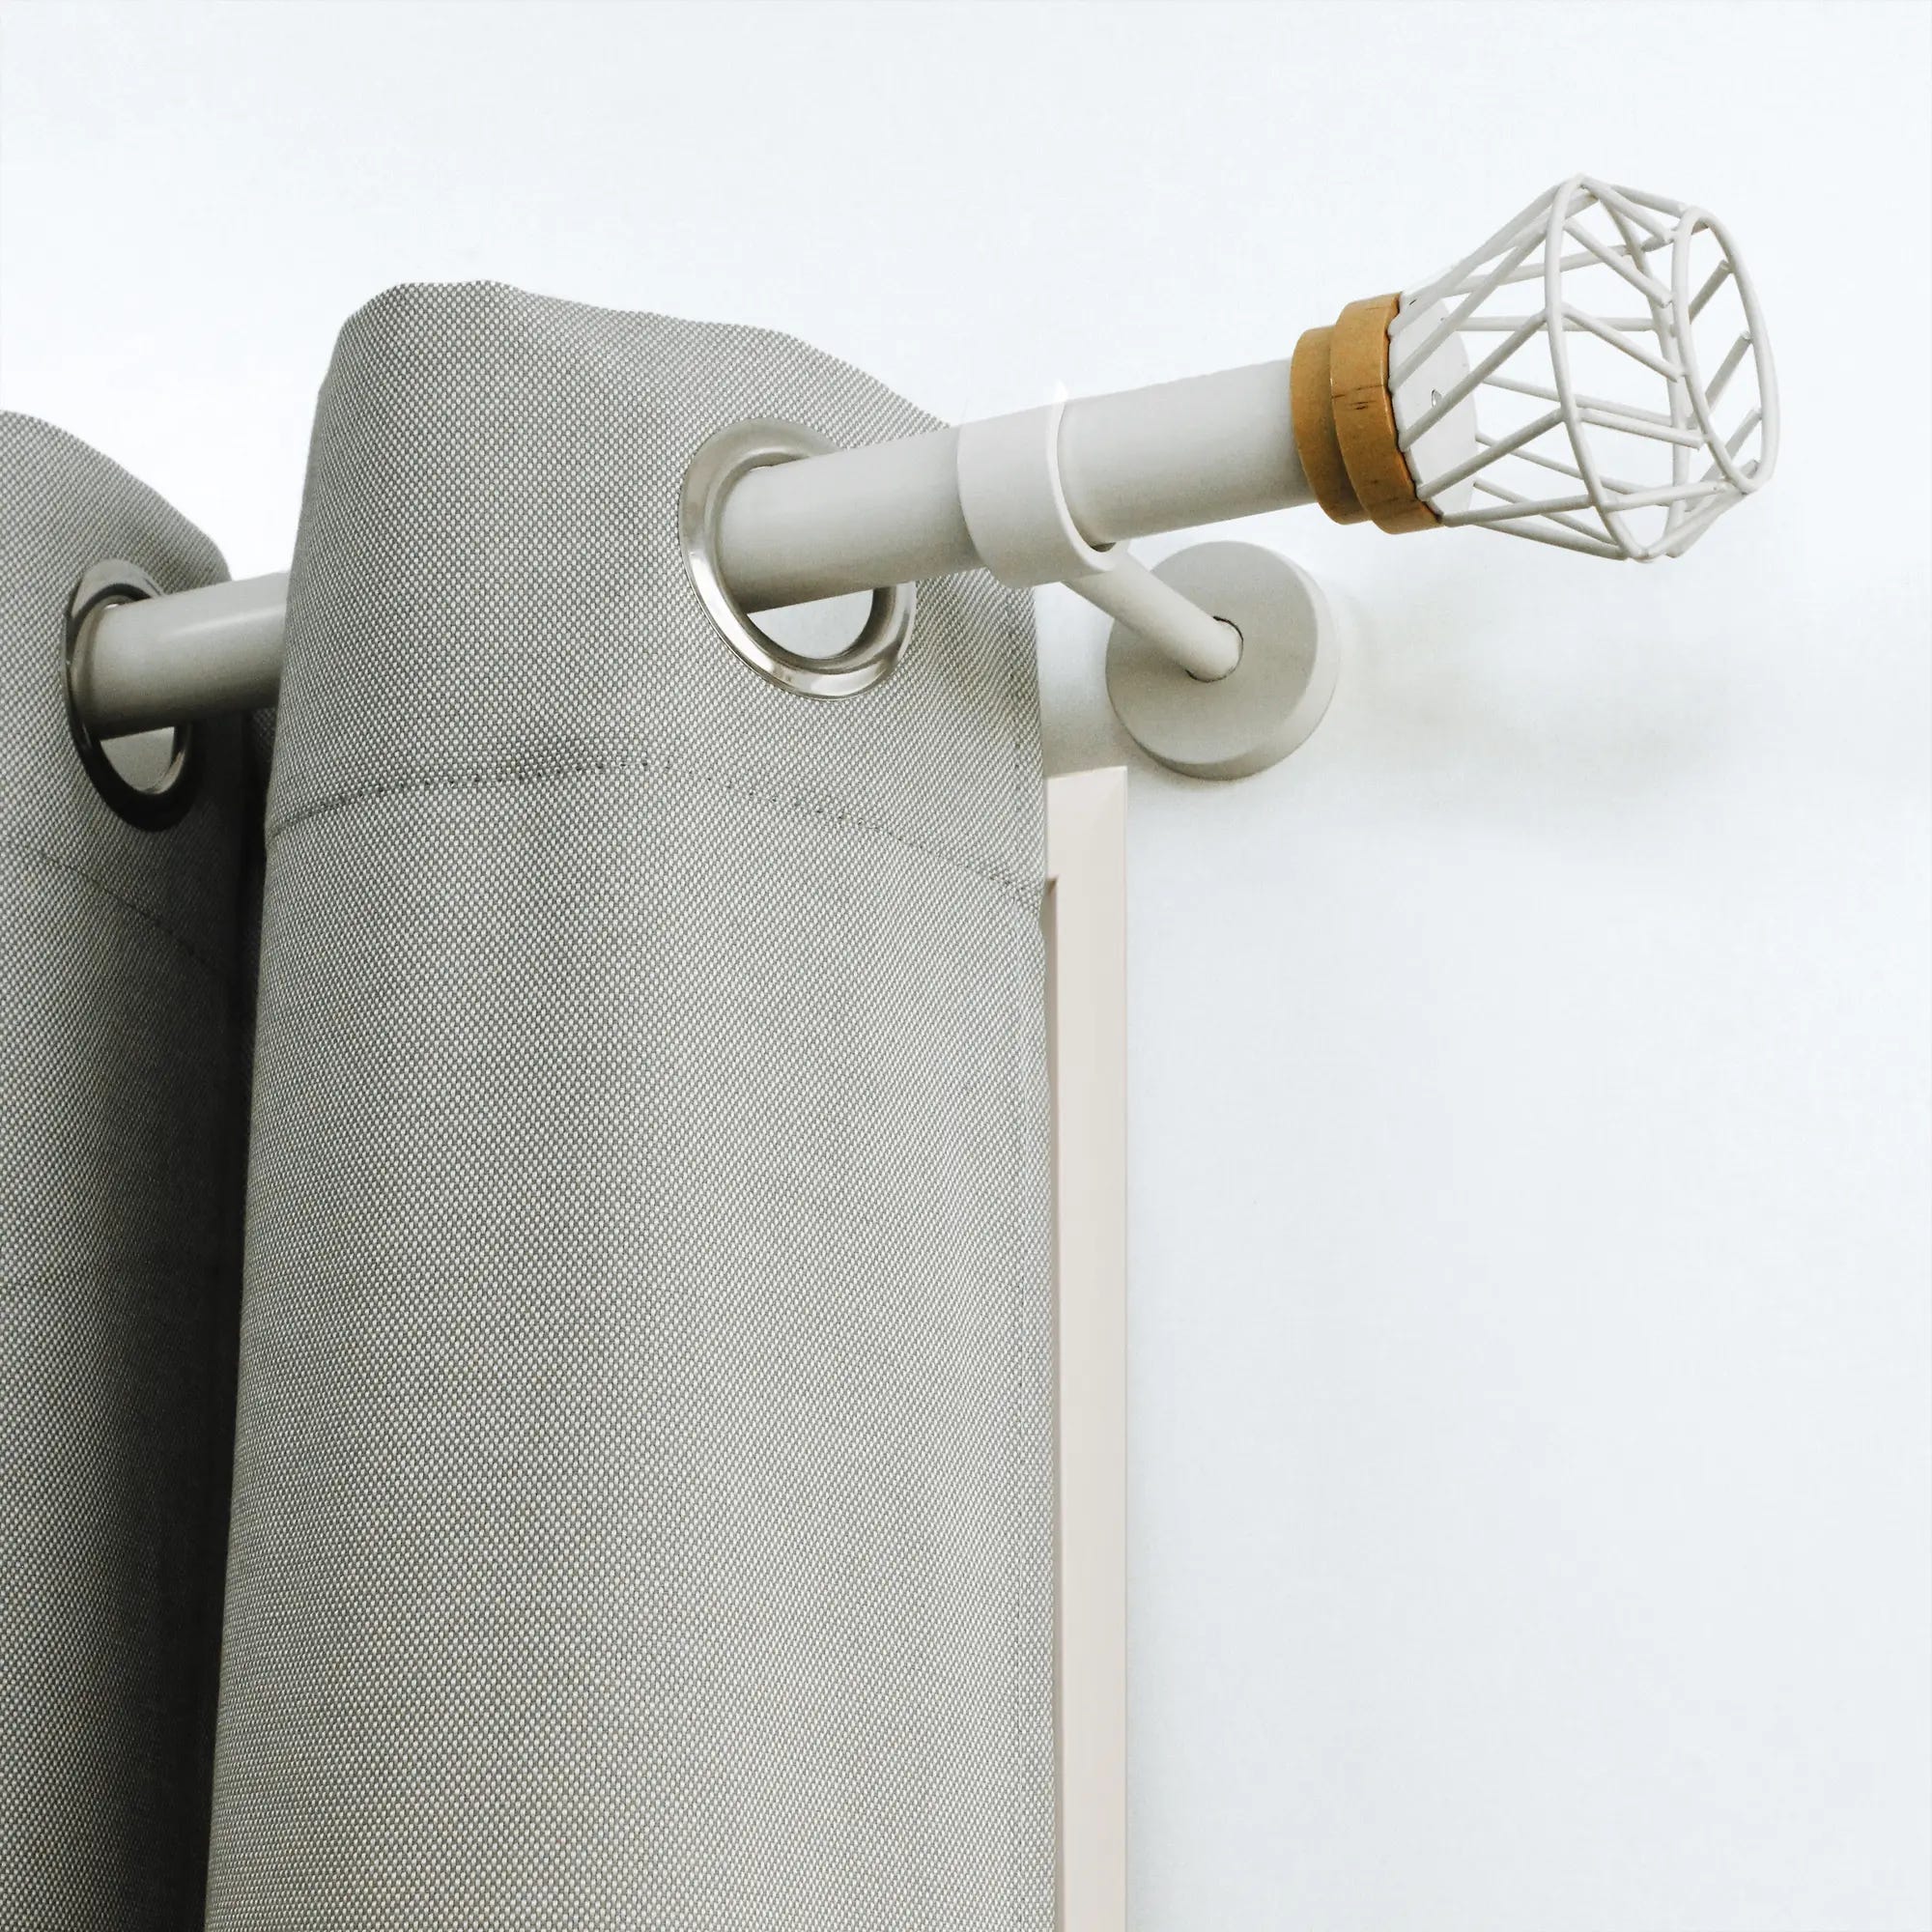 Kit bastone per tenda a pressione estensibile da 160 a 300 cm Pommel in  ferro verniciato bianco Ø 19 mm INSPIRE